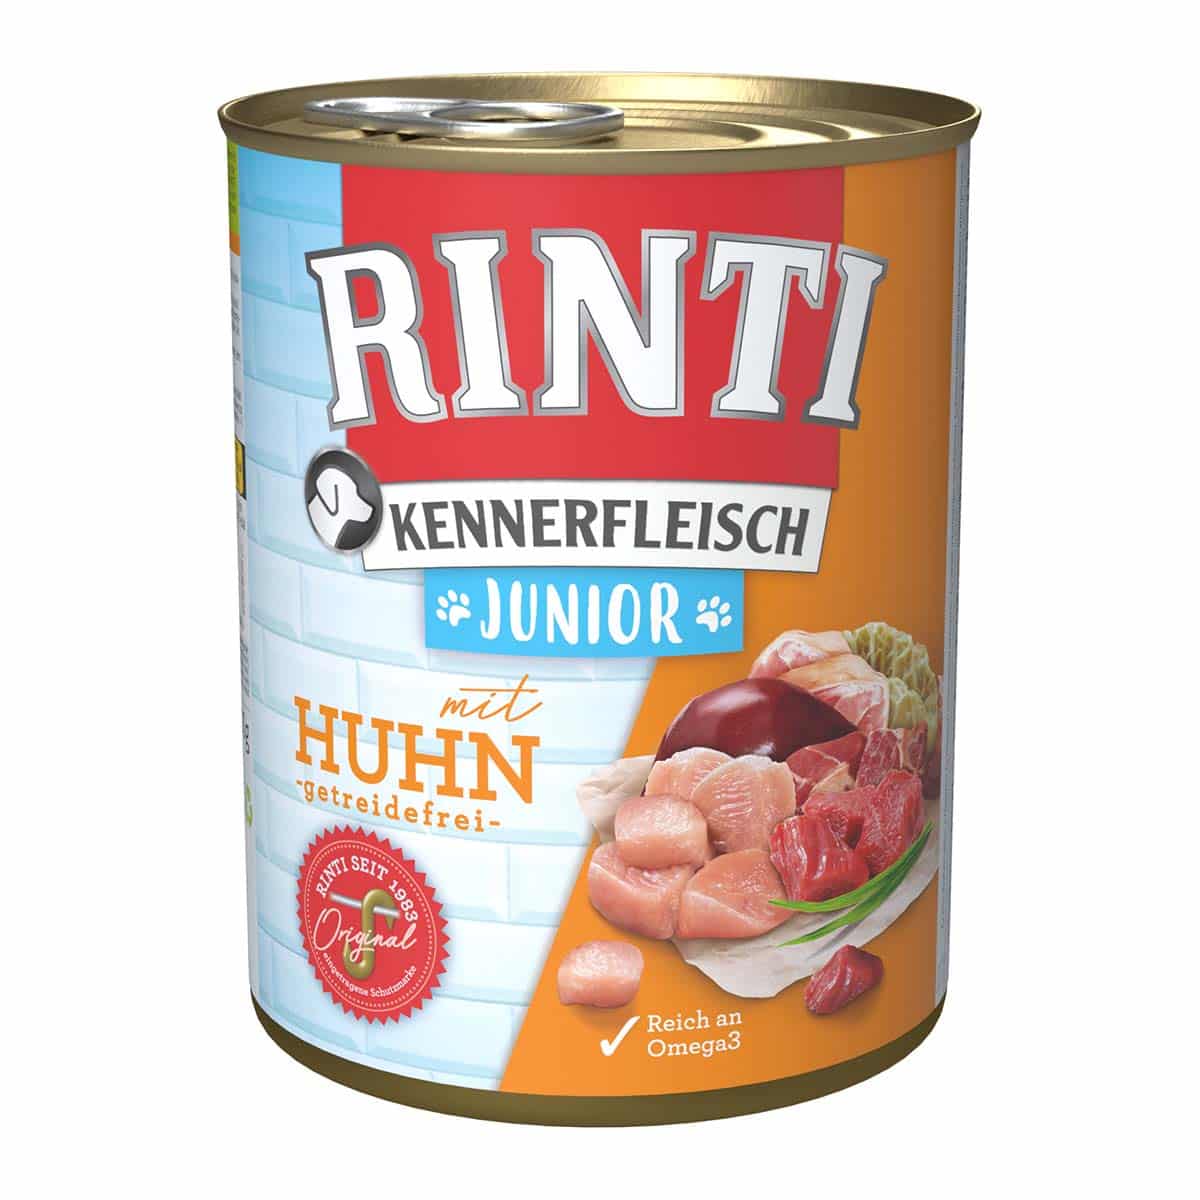 Rinti Kennerfleisch Junior mit Huhn 12x800g